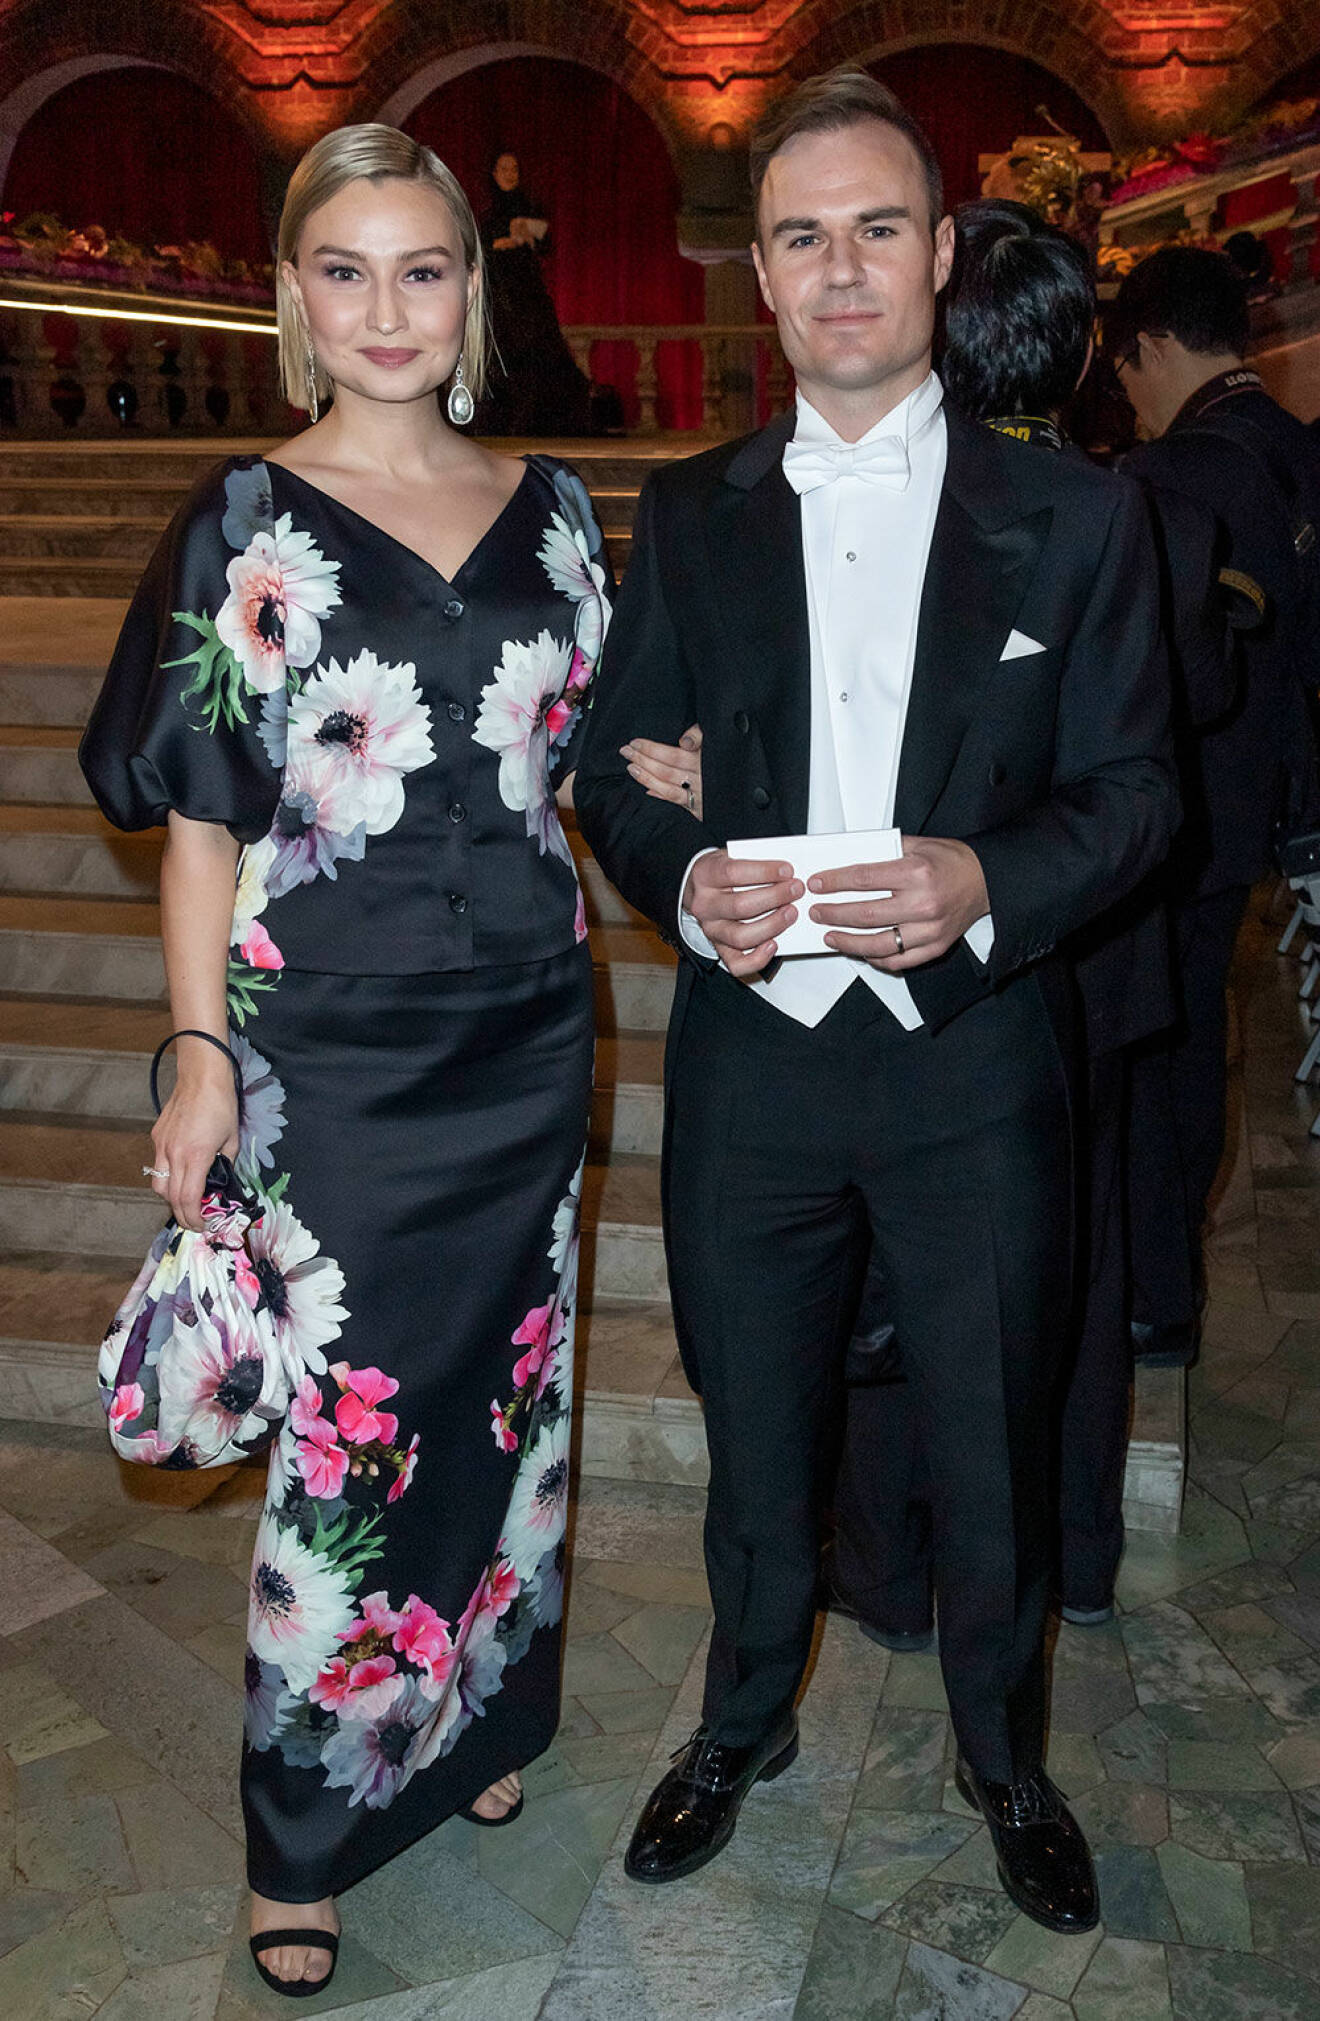 Ebba Busch Thor i klänning från Stylein på Nobel 2018